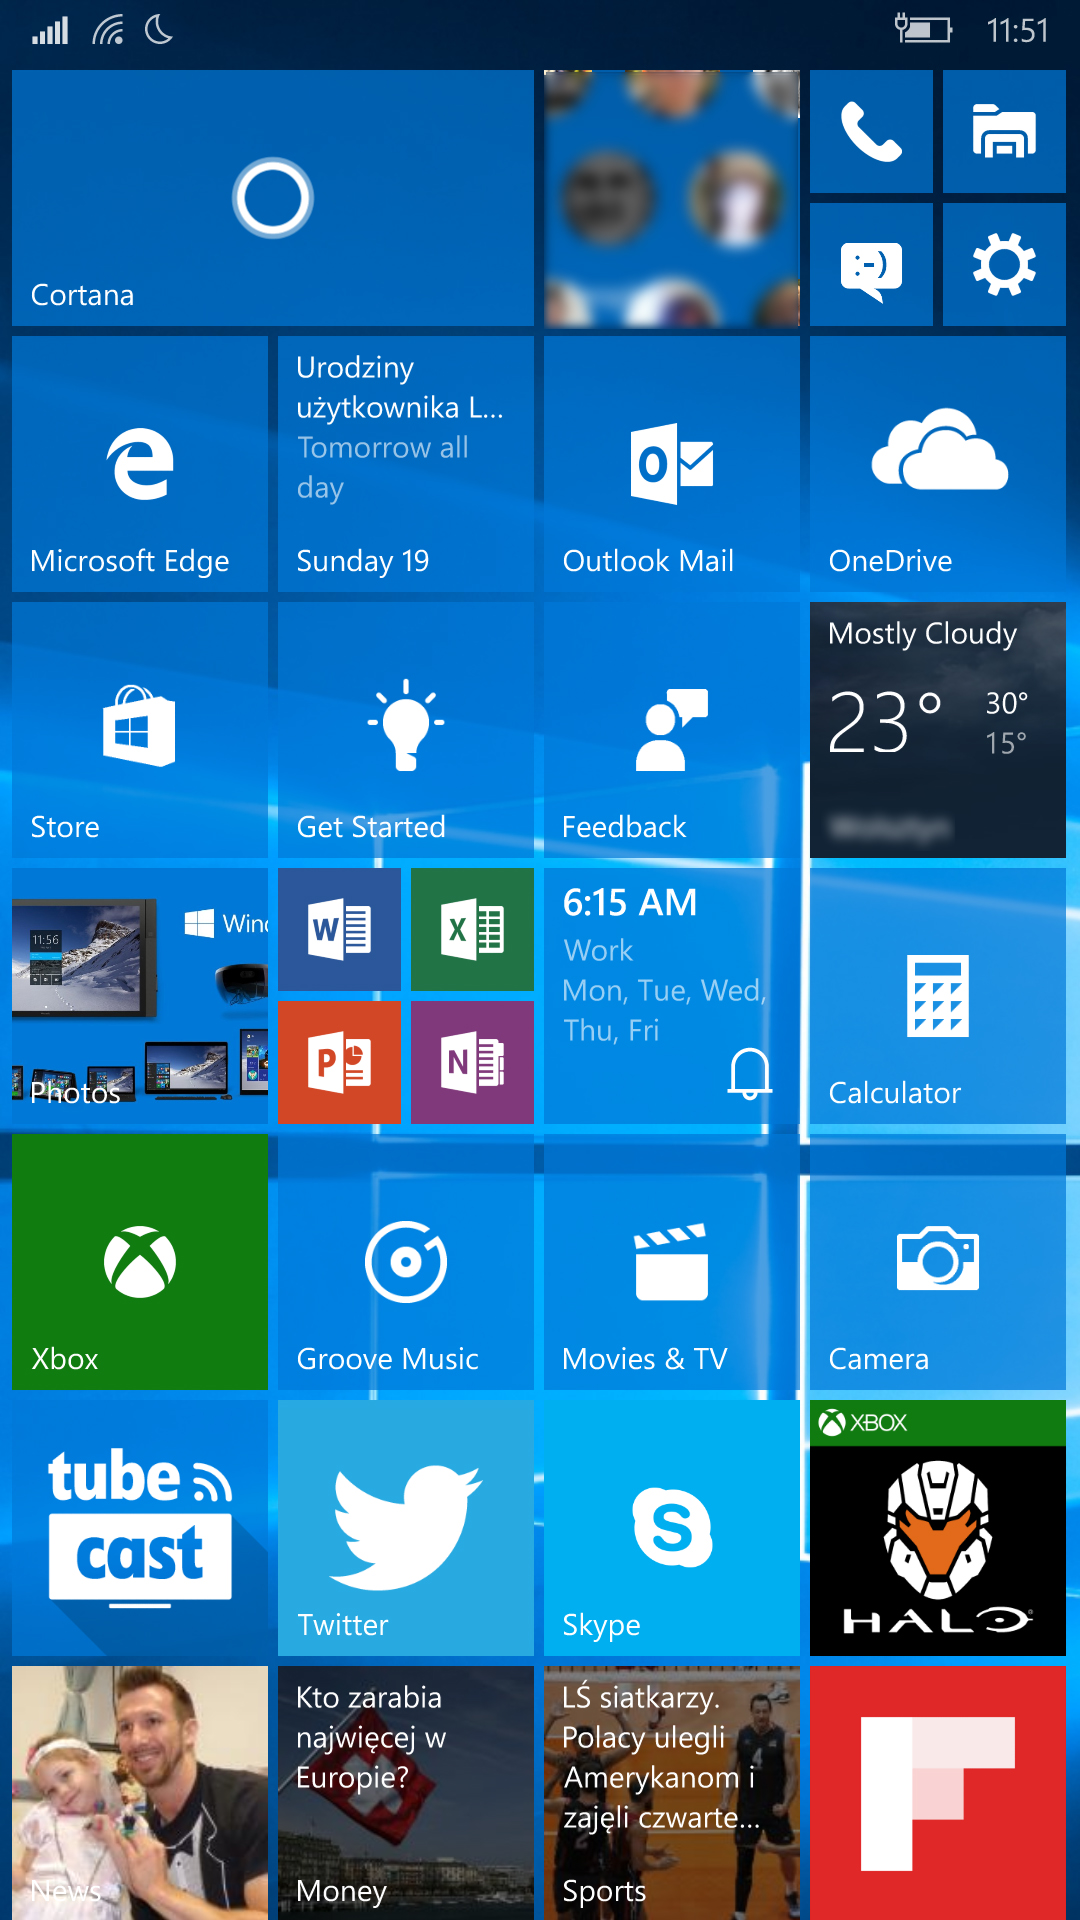 Версия ос телефона. Windows 10 mobile. Windows 10 mobile Интерфейс. Экран Windows Phone. Windows Phone Операционная система.